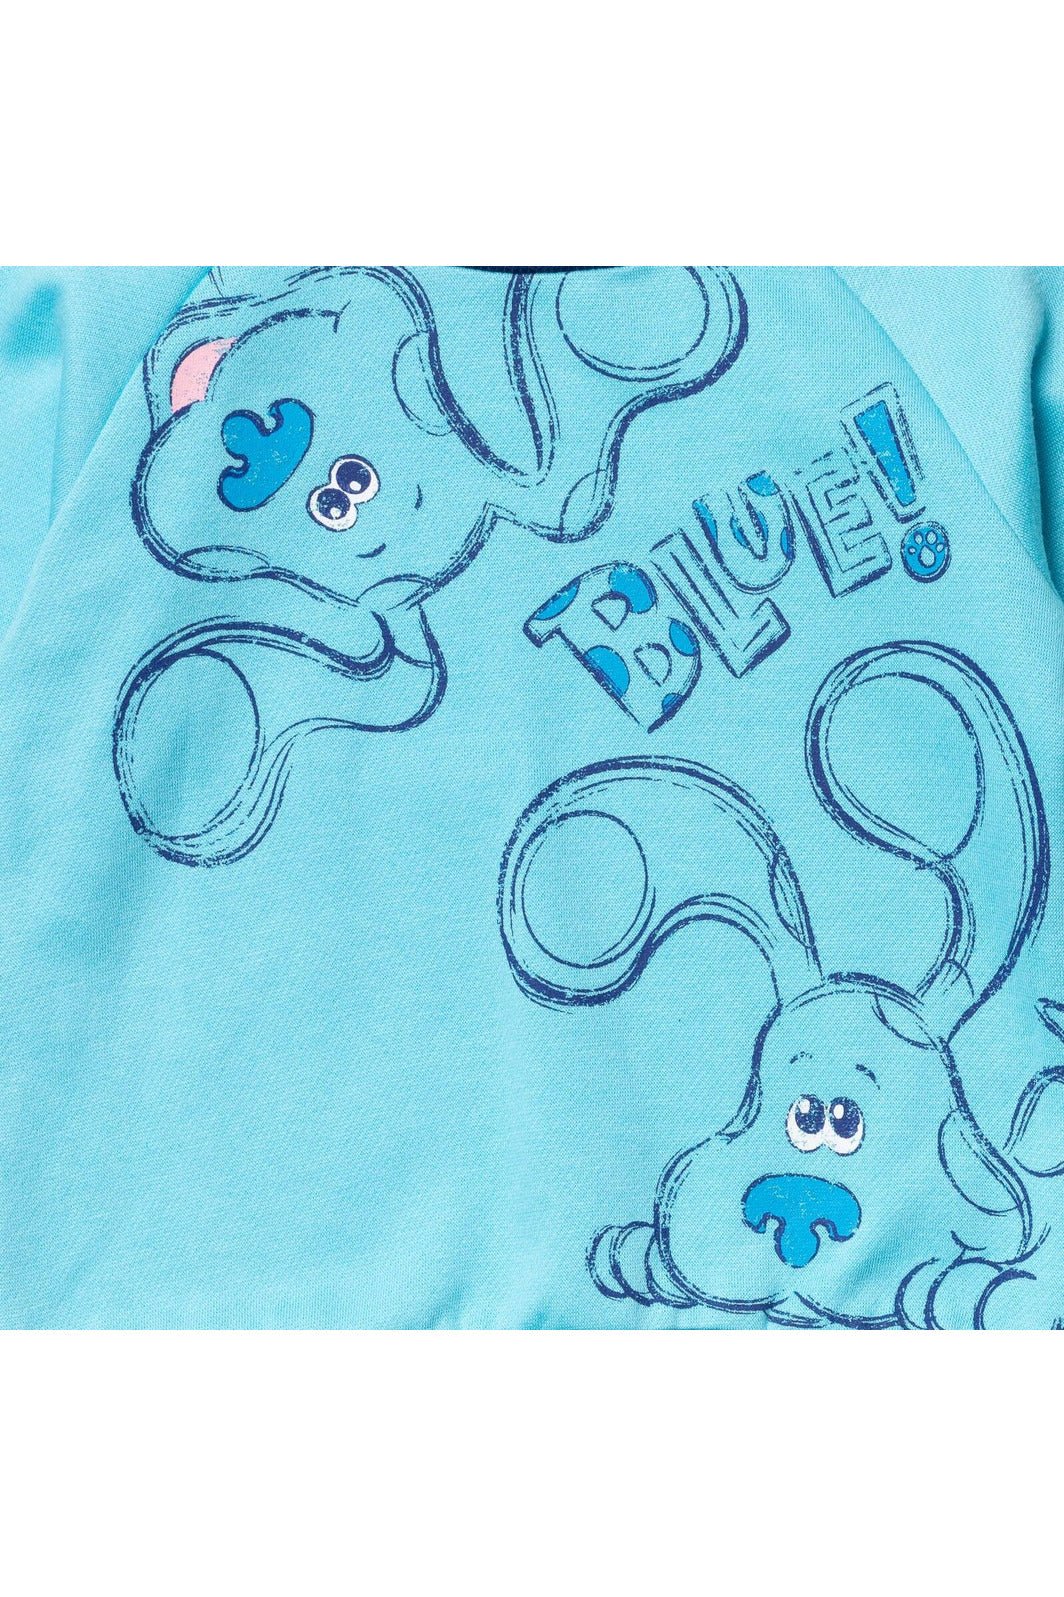 Blue's Clues & You! Fleece Hoodie and Sweatshirt - imagikids